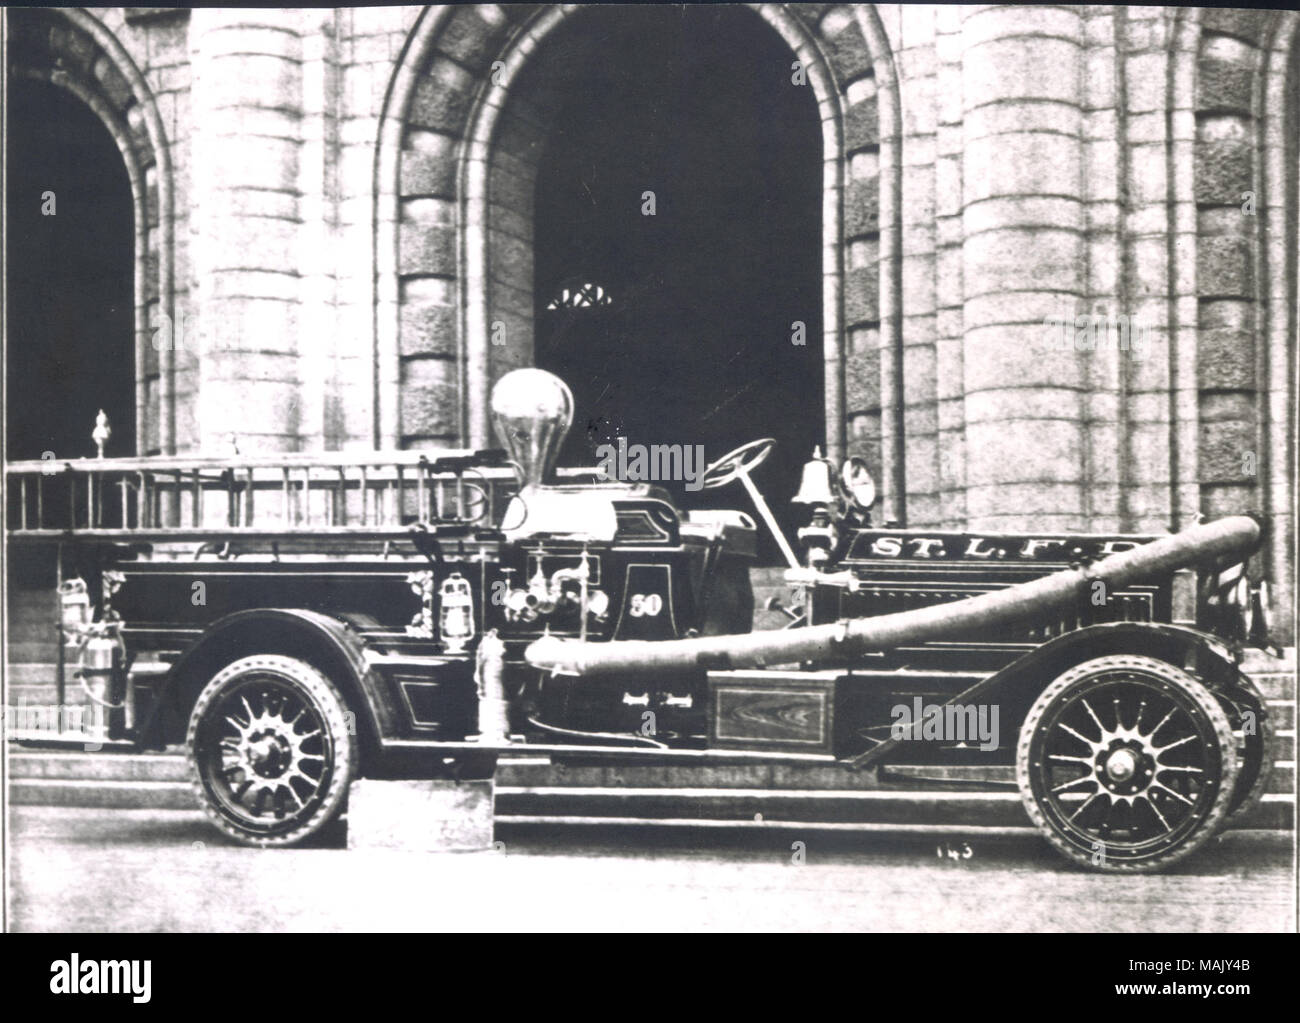 Titolo: Robinson "Jumbo", 1° dimensione, 900 gpm pumper, realizzati in St. Louis 1913. Servita per prima con il motore Co 50, venduto nel 1935 a Kinloch Volunteer Fire Dept. . 1913. Foto Stock